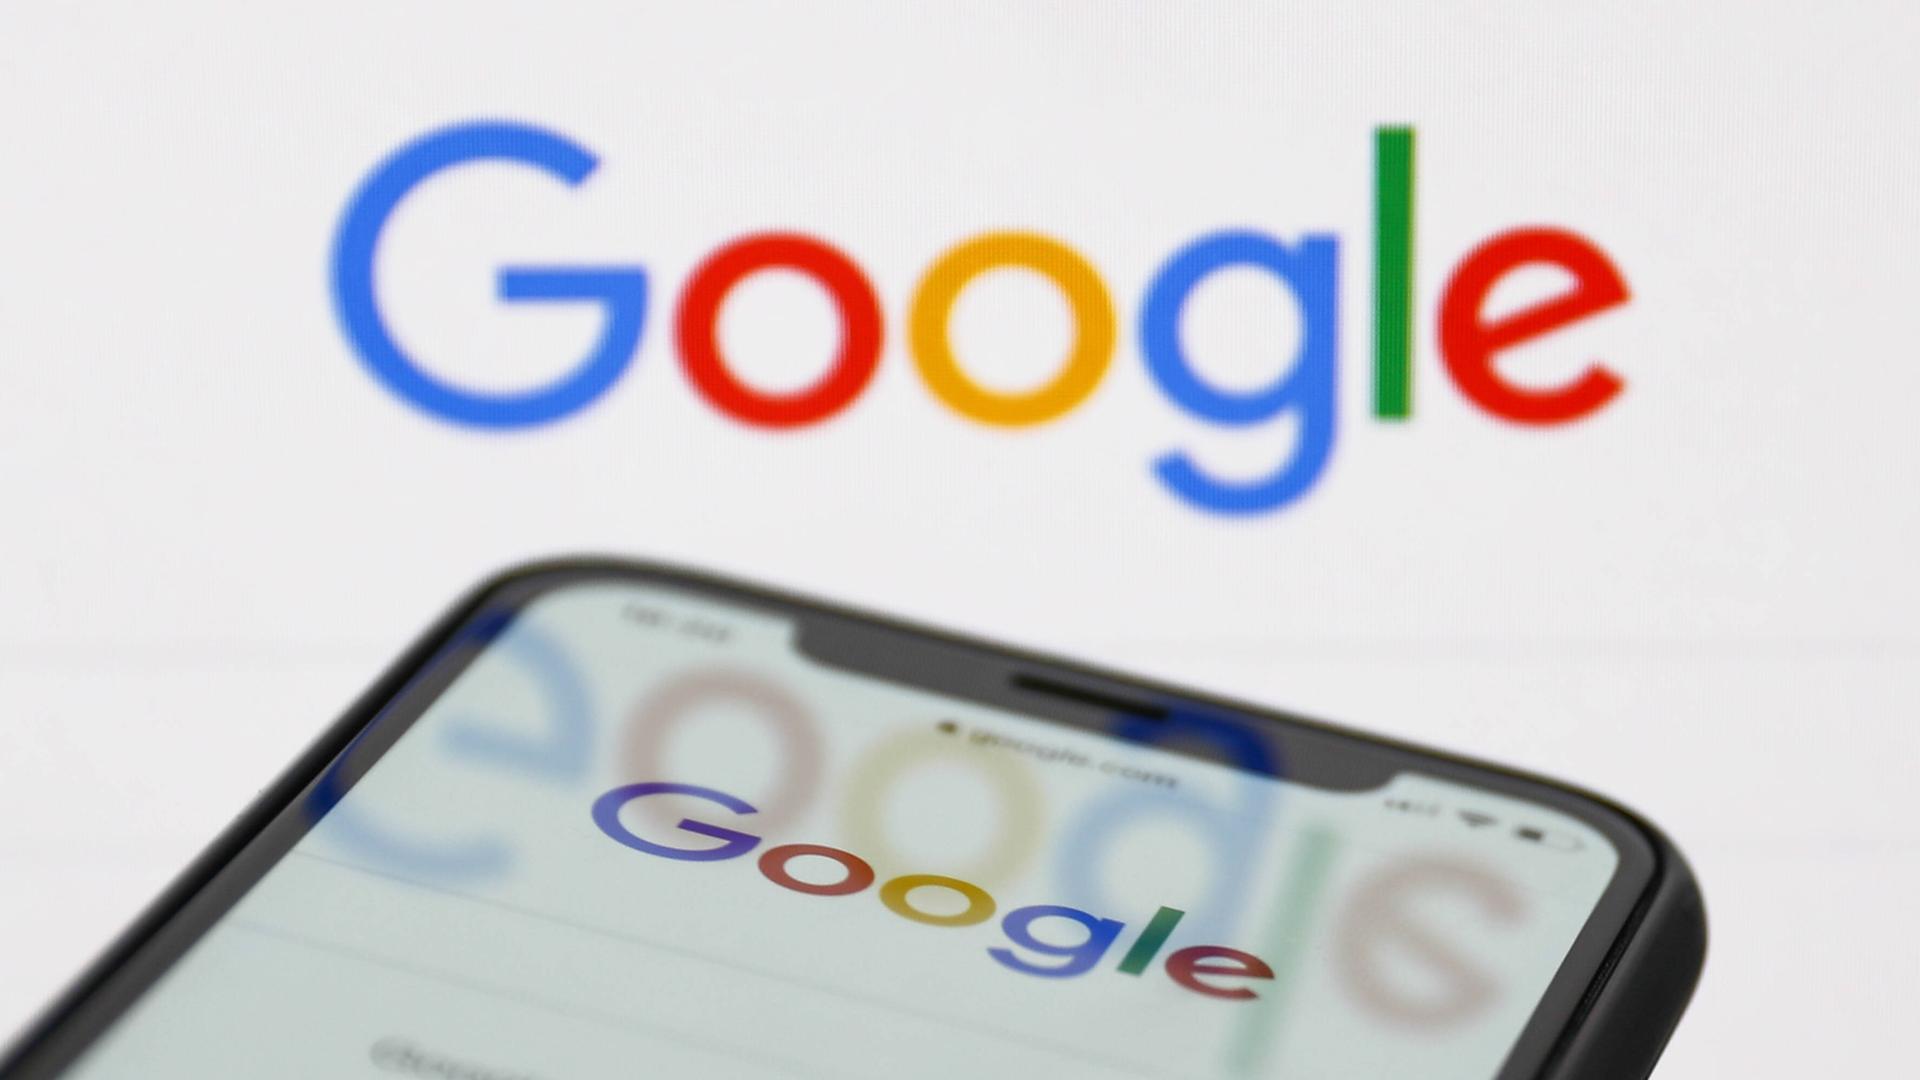 Urteil - Google muss falsche Informationen aus Trefferliste entfernen